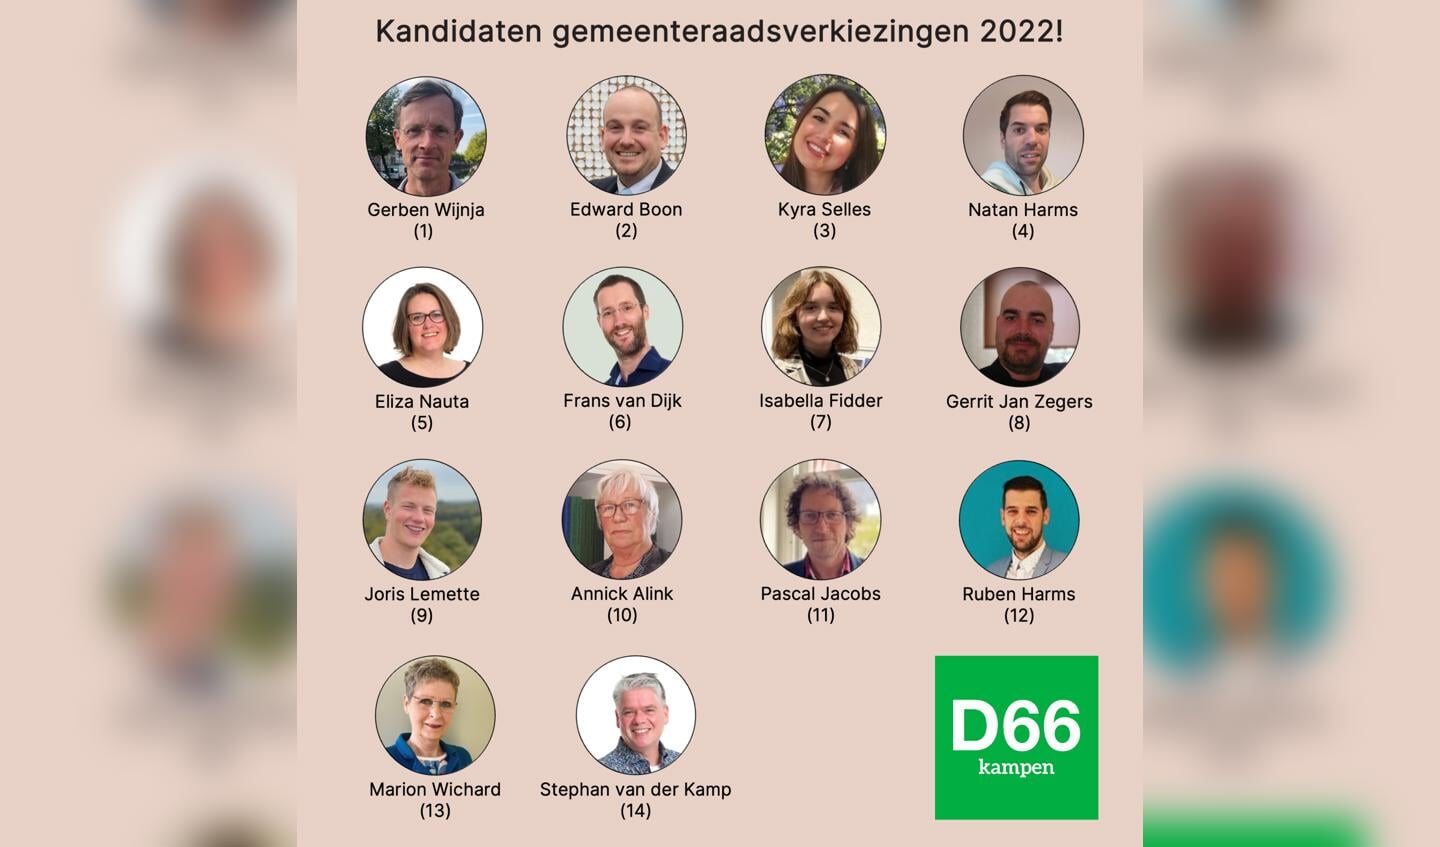 Overzicht kandidaten D66 Kampen bij komende gemeenteraadsverkiezingen